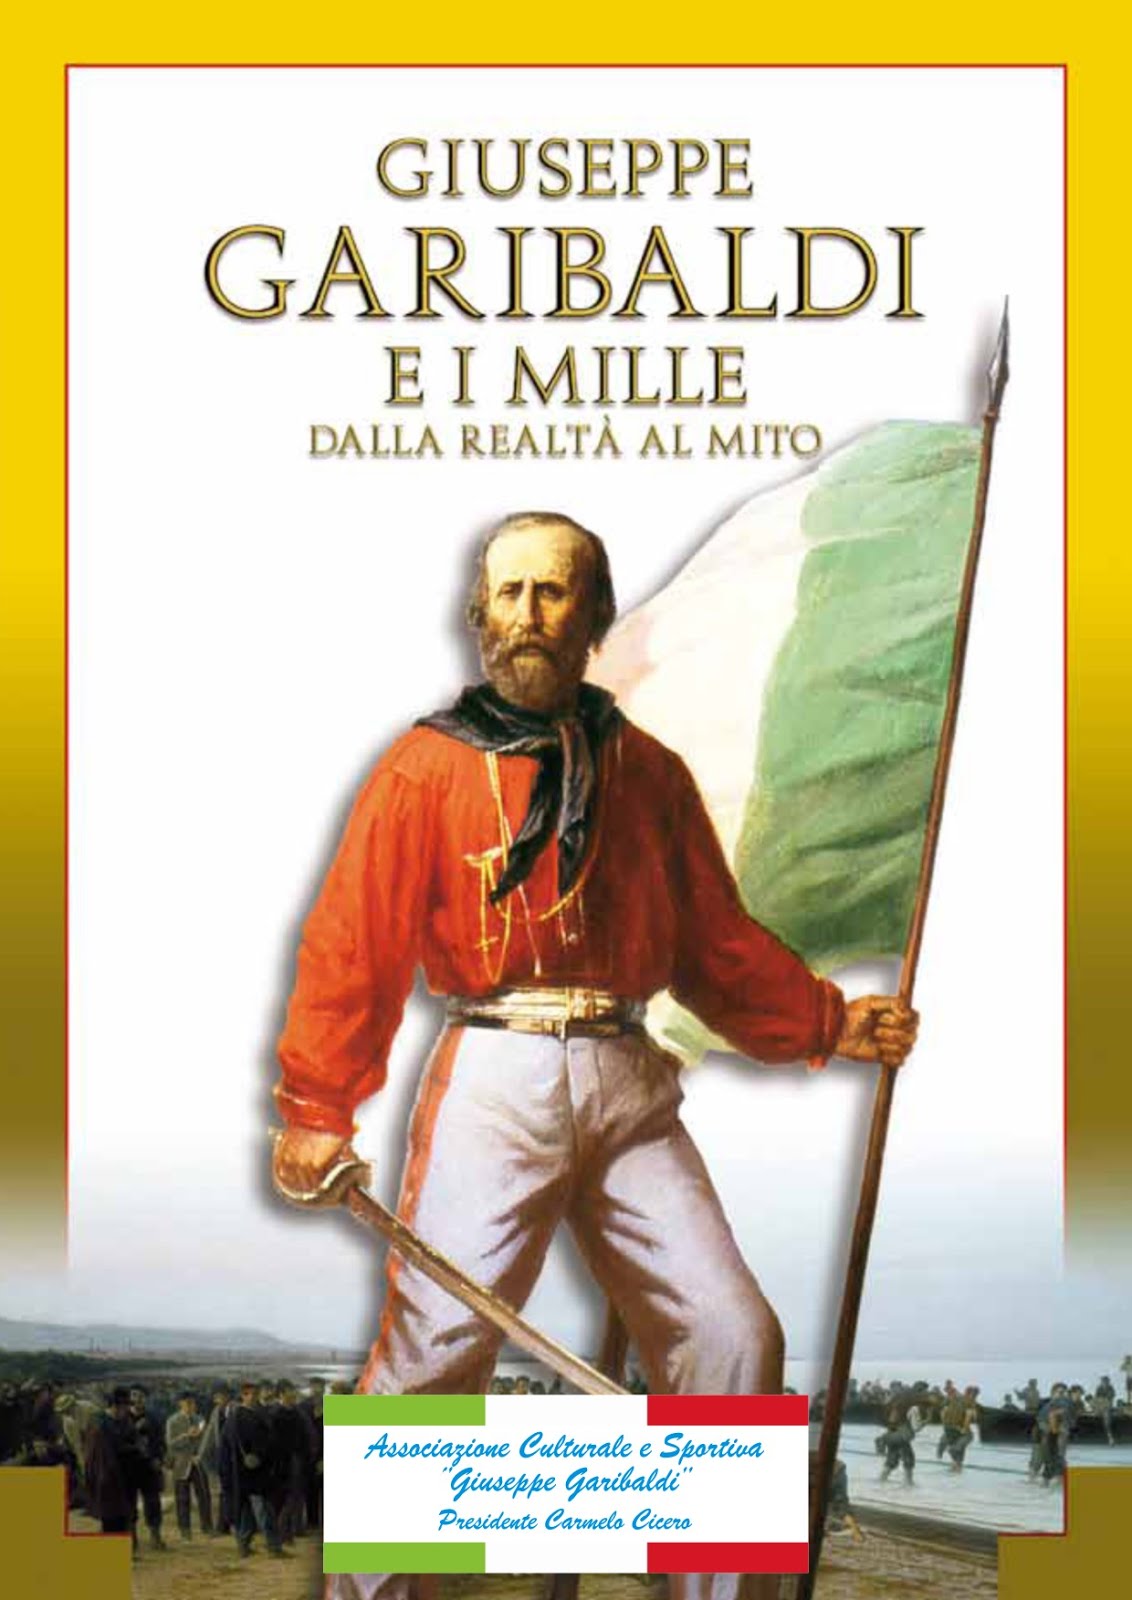 Associazione Culturale e Sportiva "Giuseppe Garibaldi"